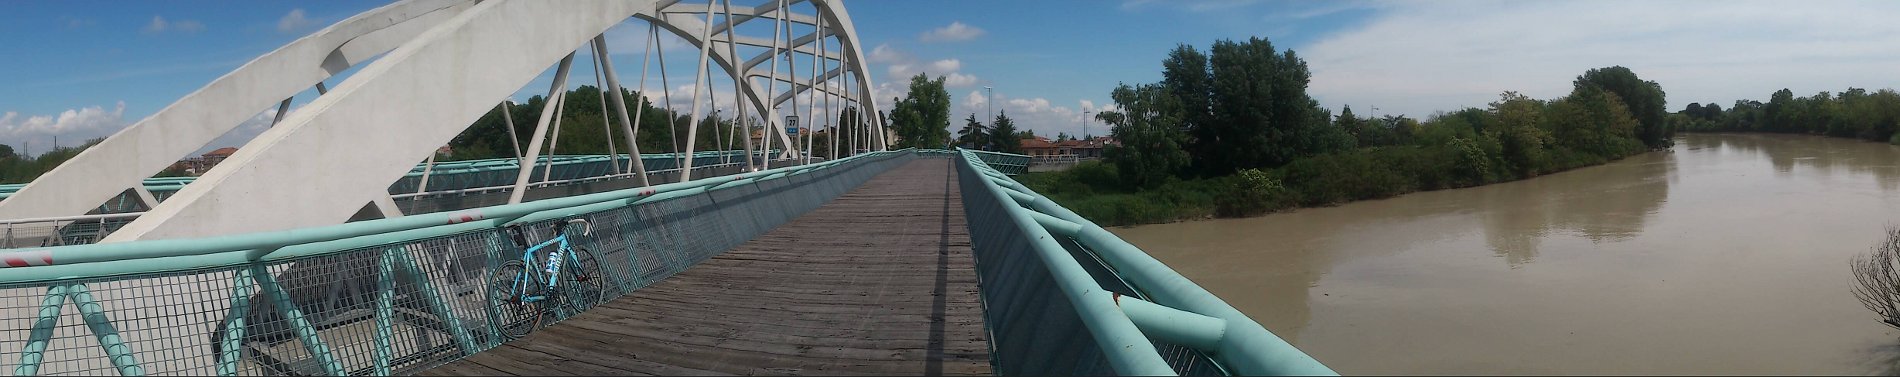 Die Brücke in Eraclea